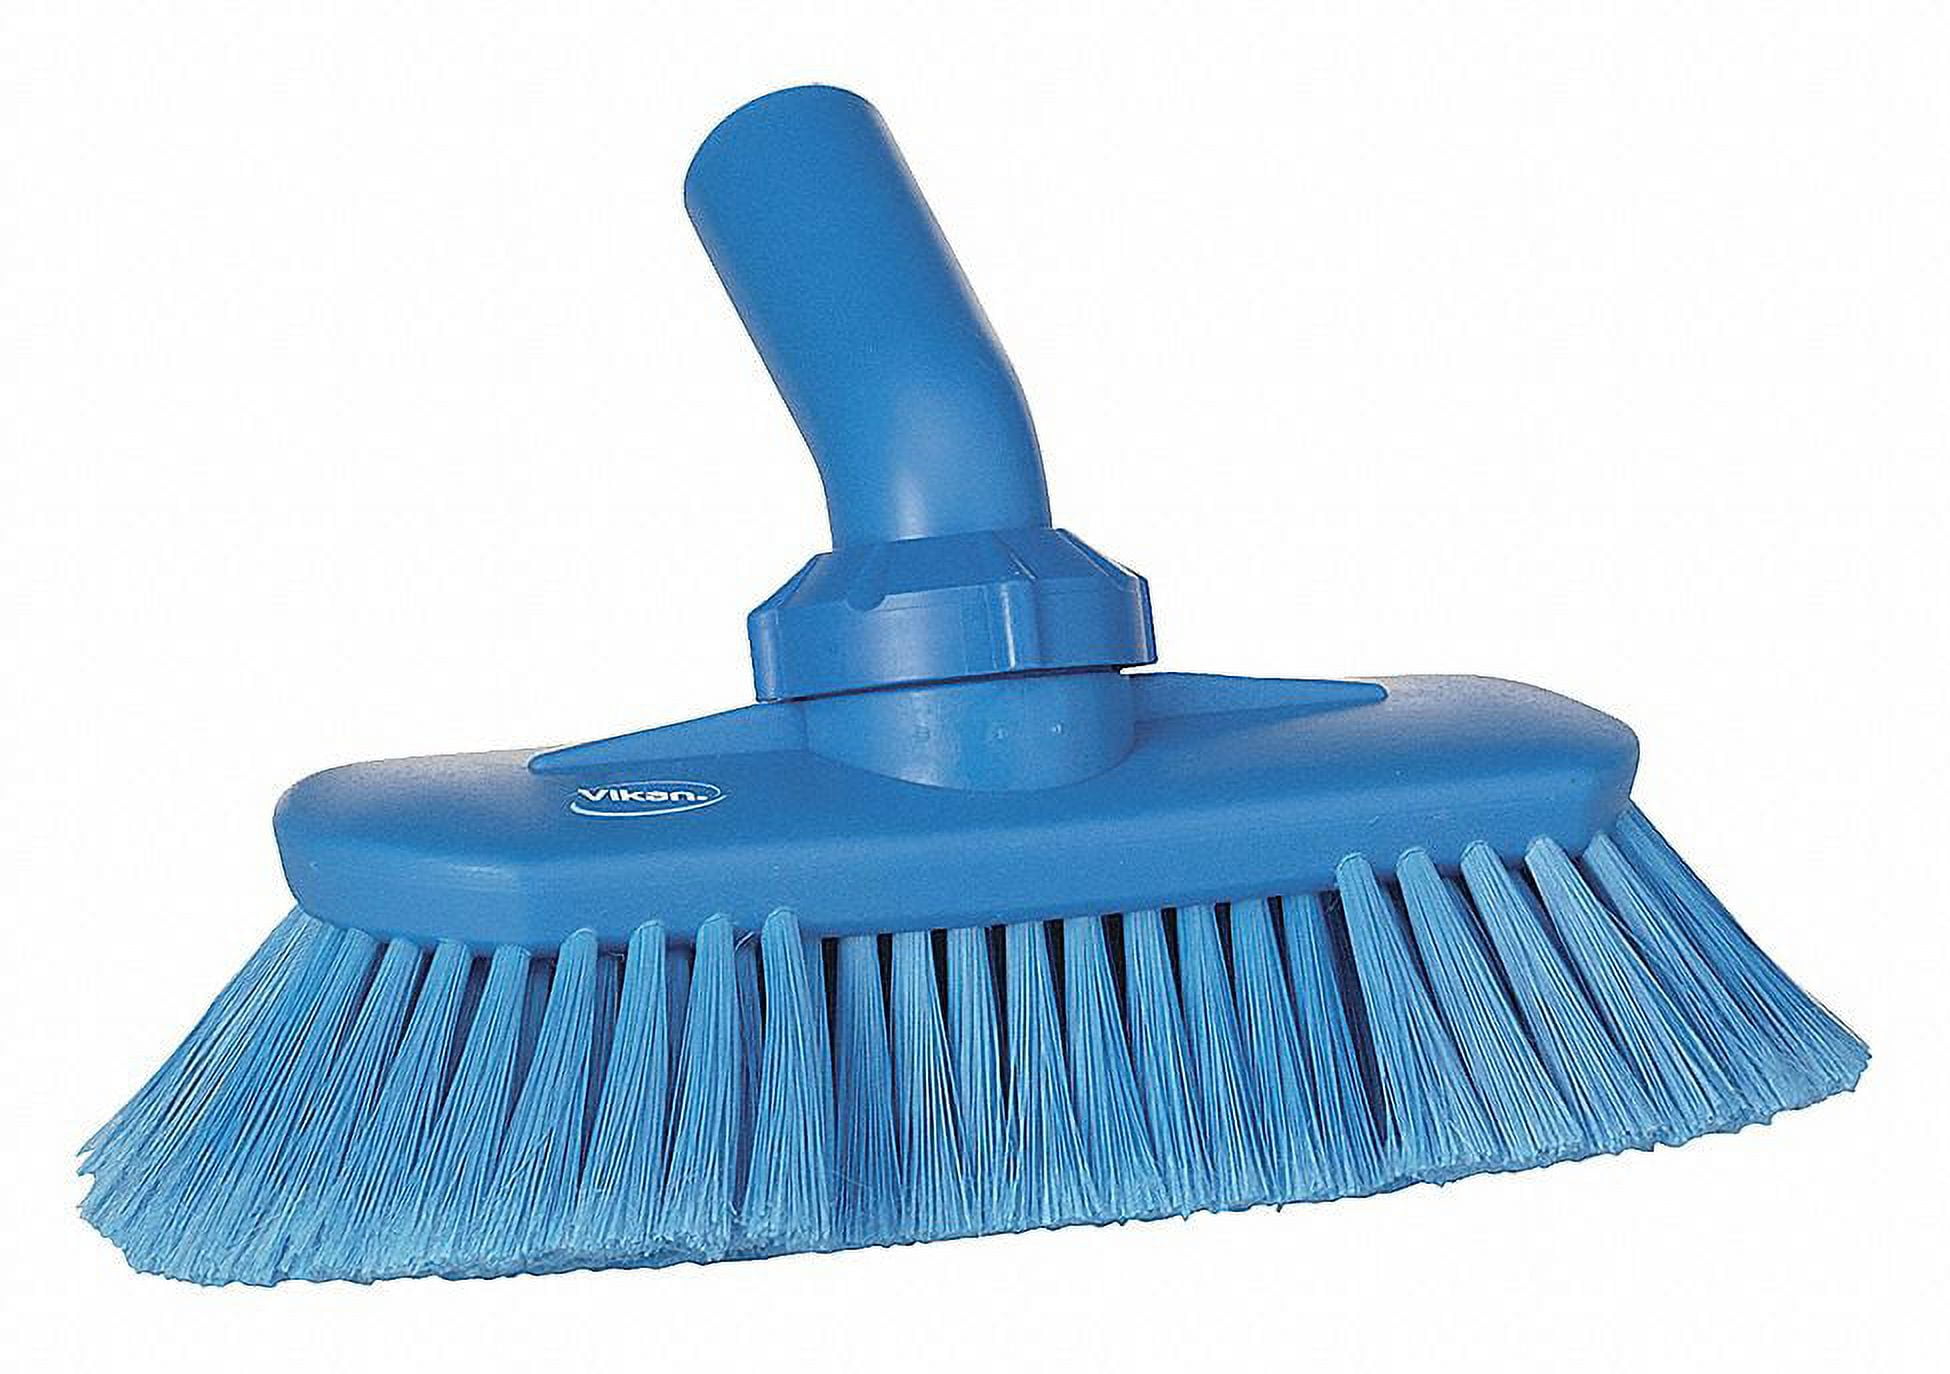 Vikan® Round Scrub Brush